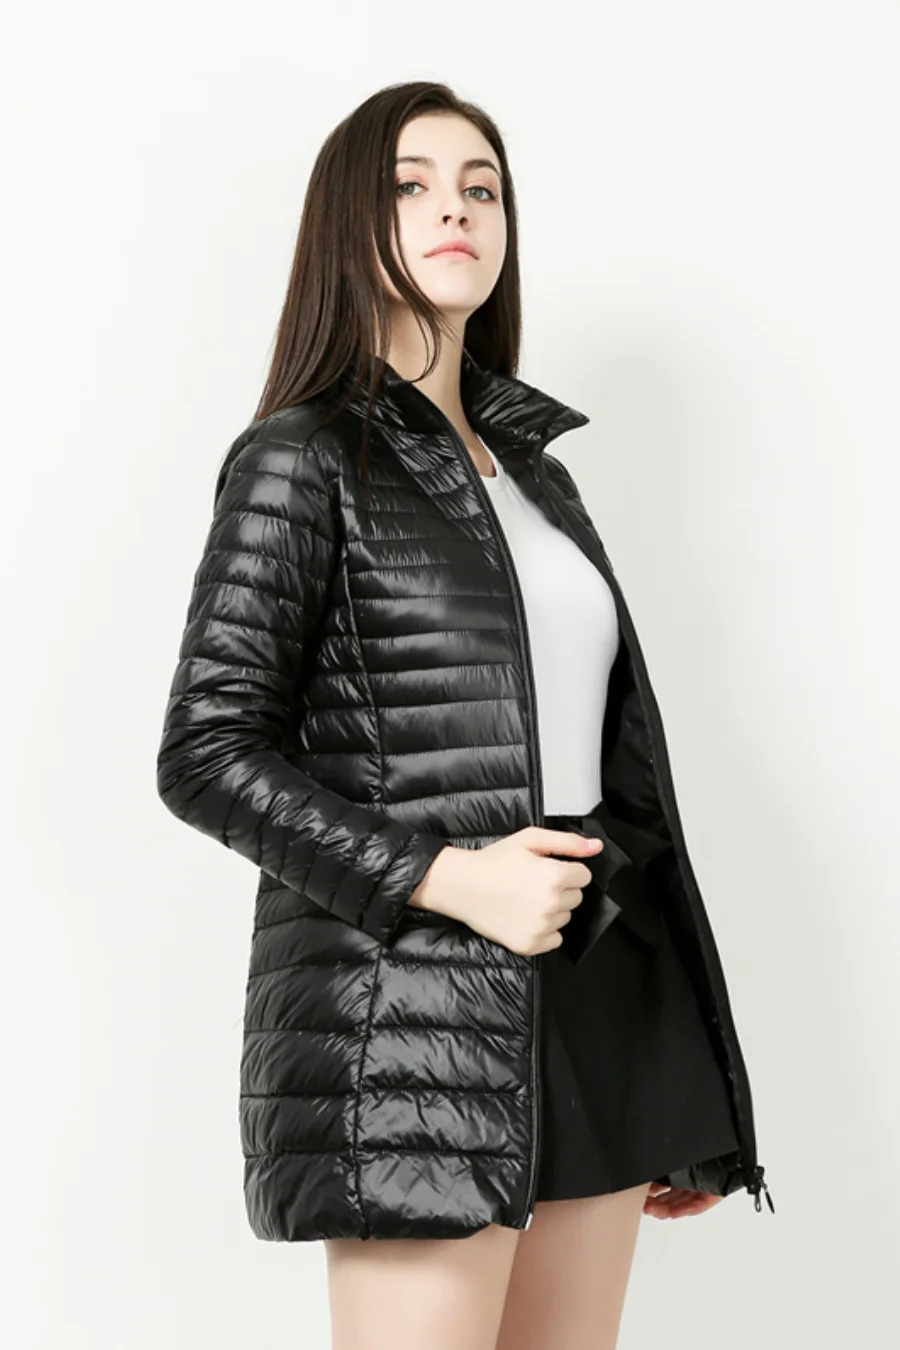 EORUTCIZ, зимнее длинное женское пальто, плюс размер, 7XL, ультра-светильник, куртка, теплая, винтажная, черная, осенняя, утиный пух, пальто, LM114